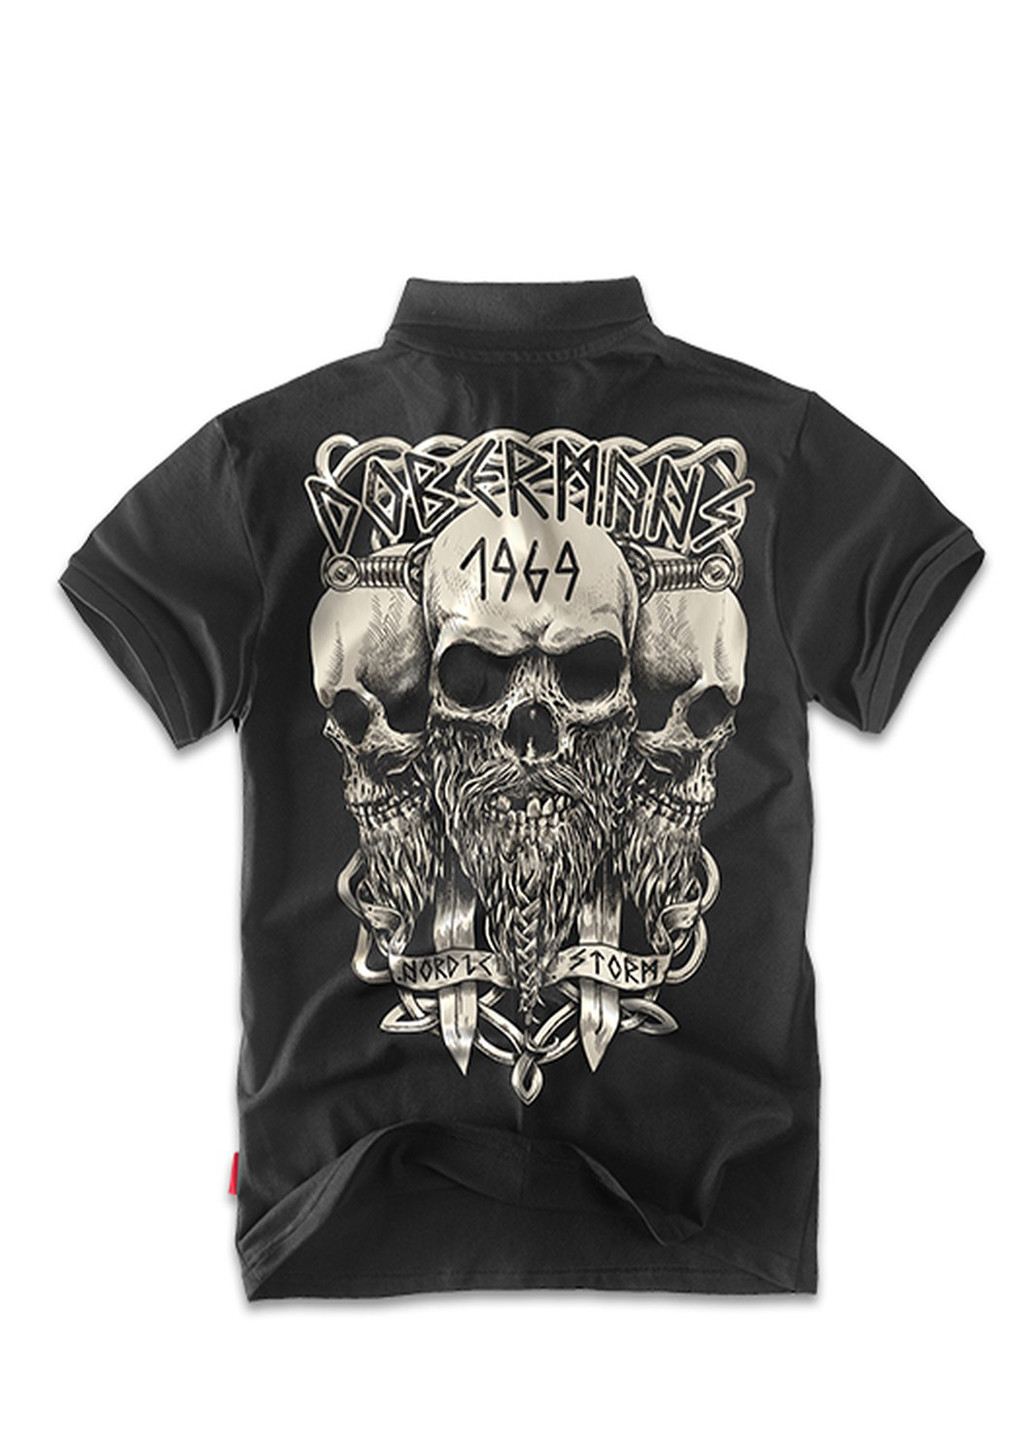 Черная футболка-футболка поло dobermans viking tsp56bk для мужчин Dobermans Aggressive